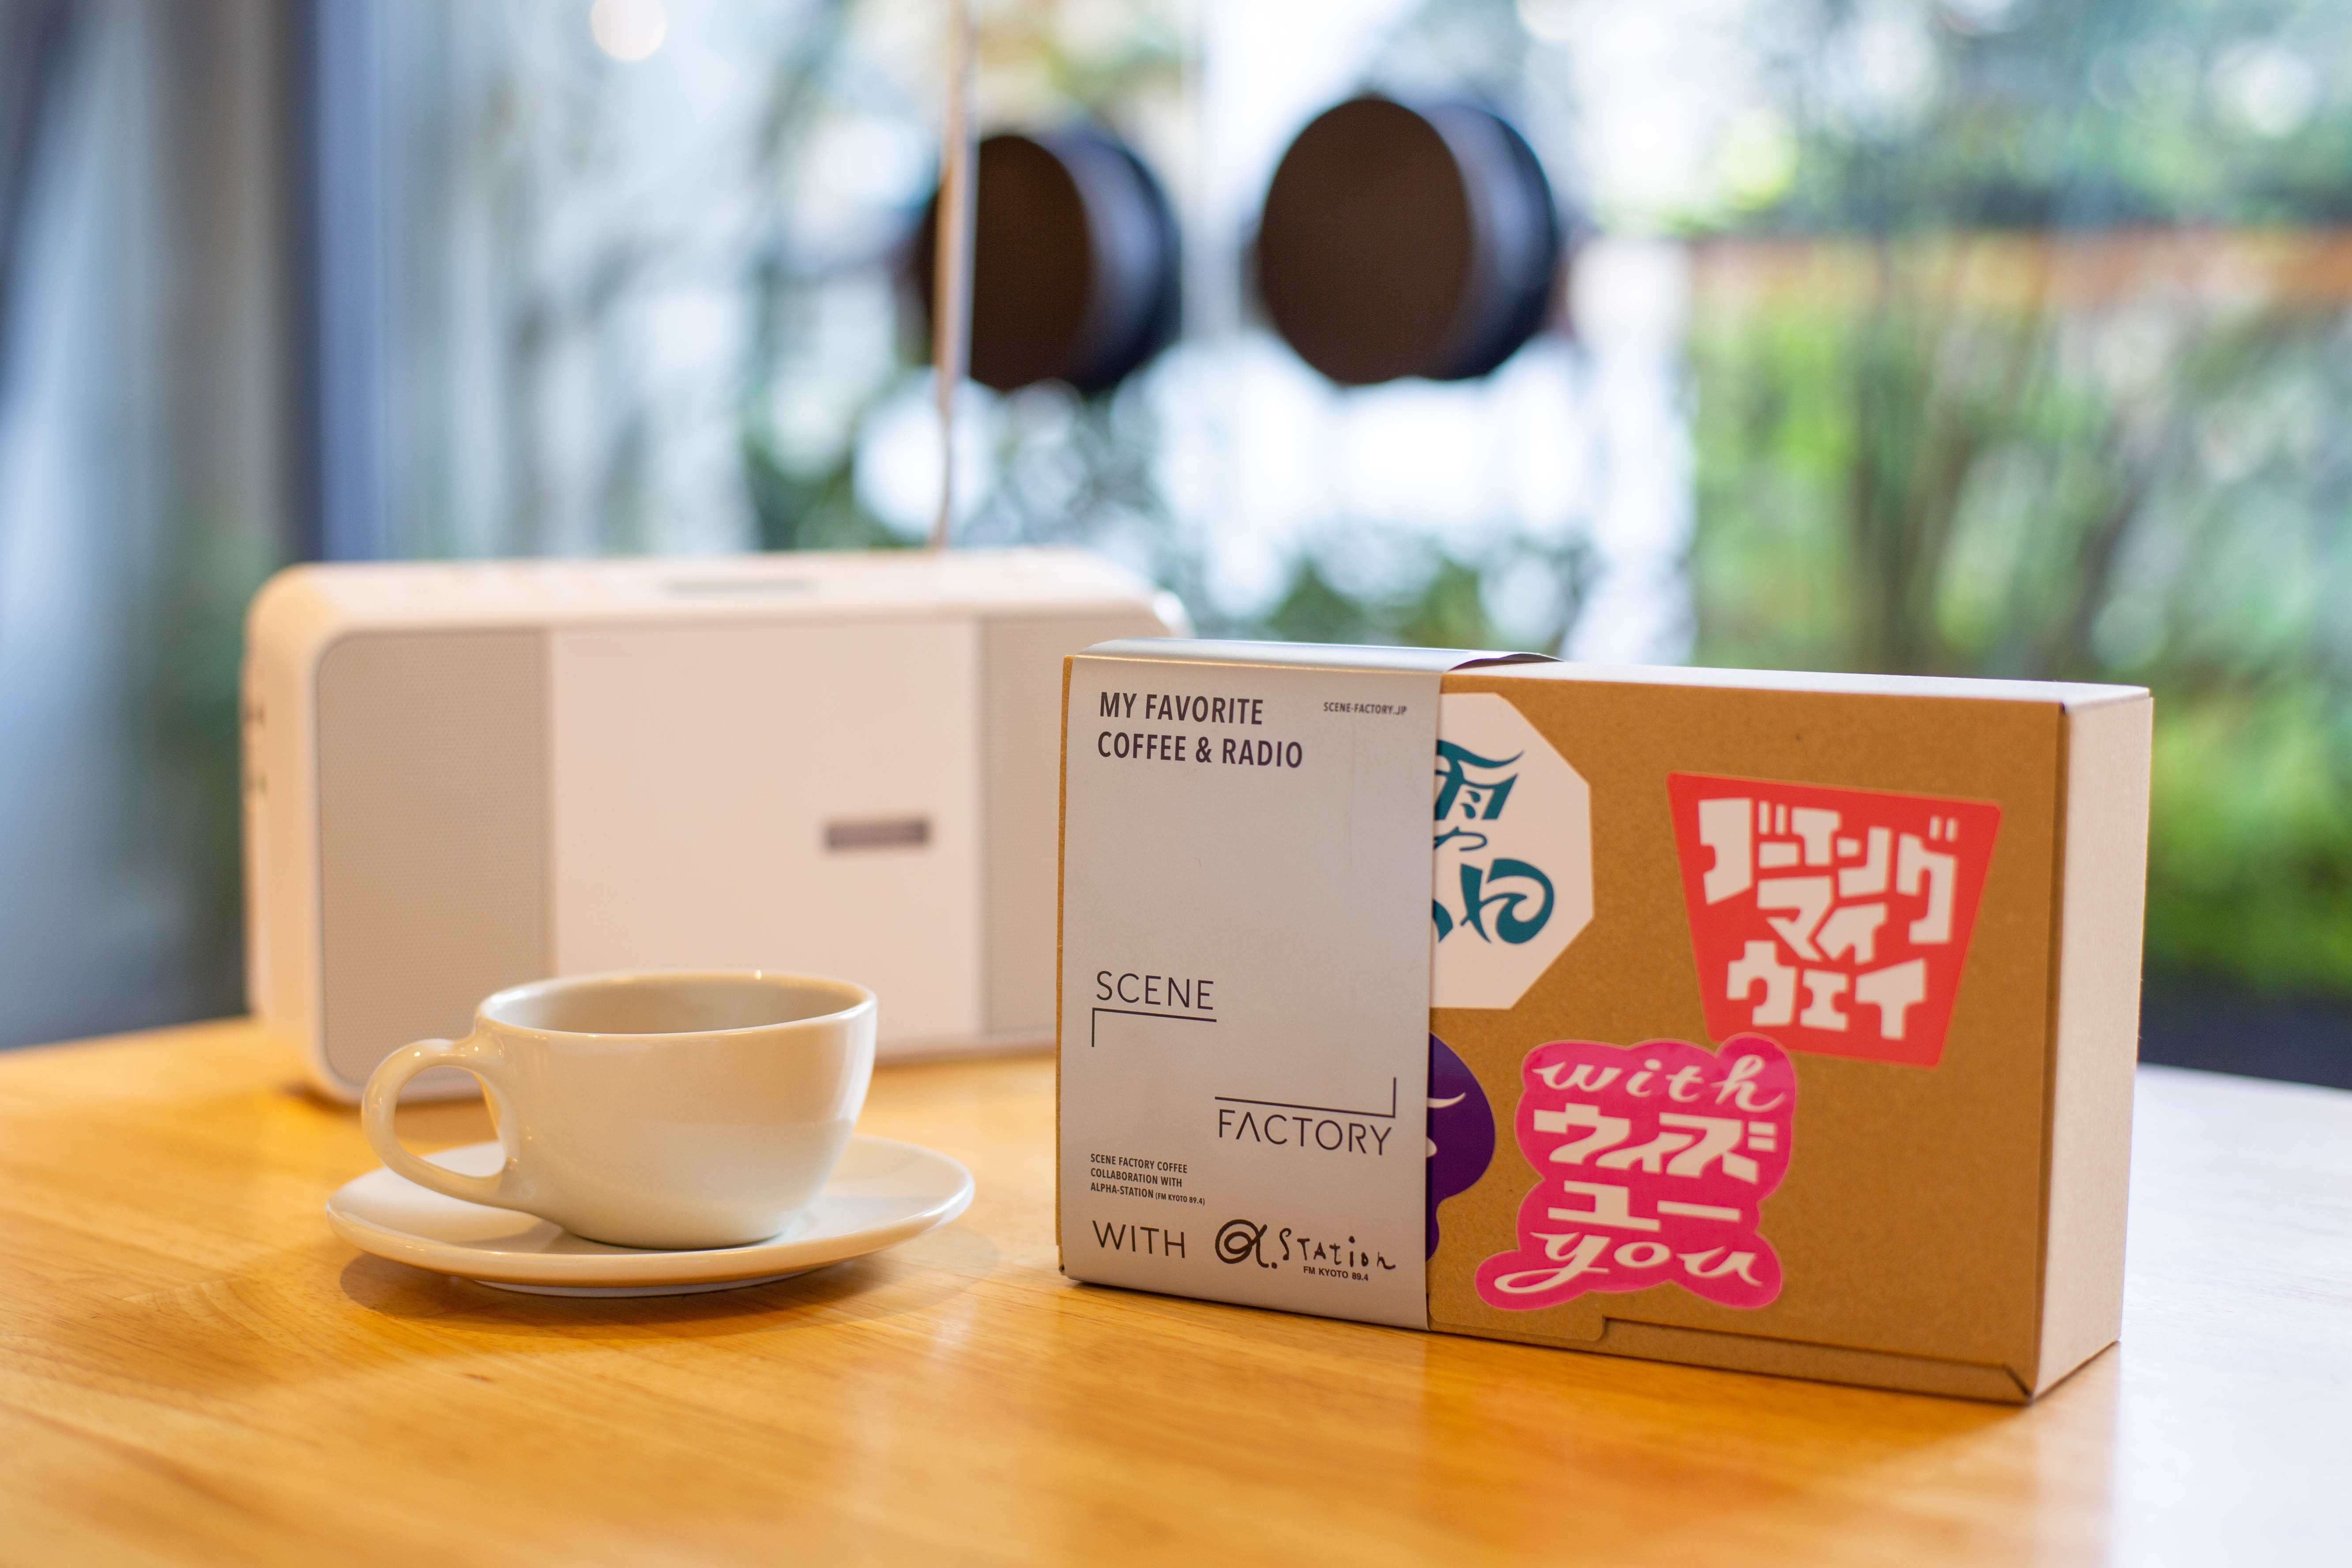 エフエム京都×SCENE FACTORY COFFEEコラボ！
生活シーンに合わせコーヒーと音楽を楽しむ
コラボ商品を5月20日から販売開始